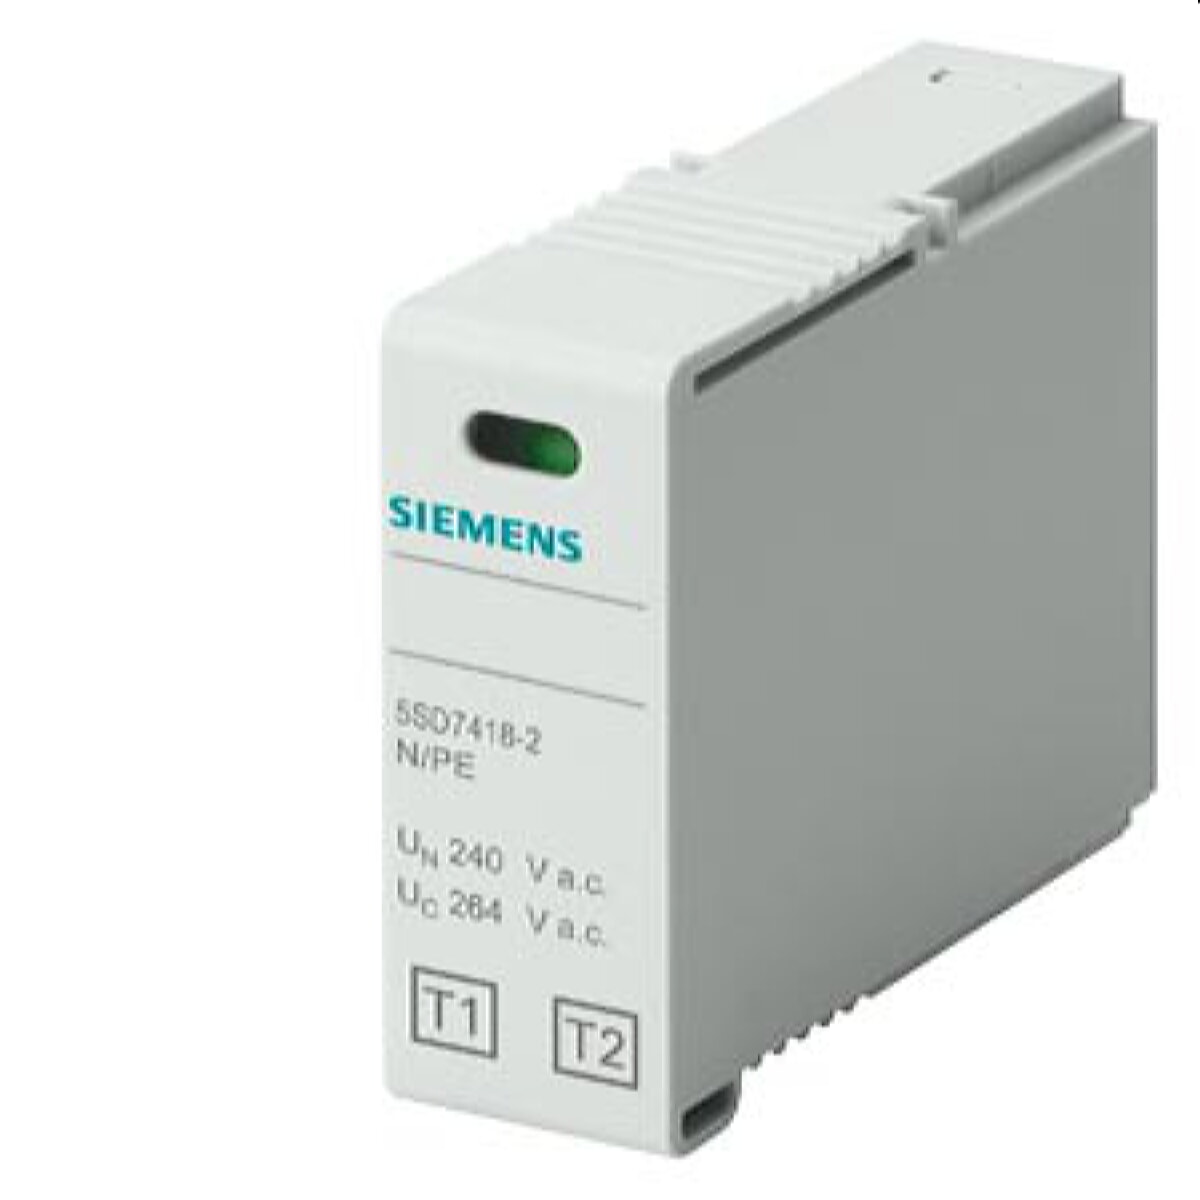 Siemens Steckteil 5SD7418-2